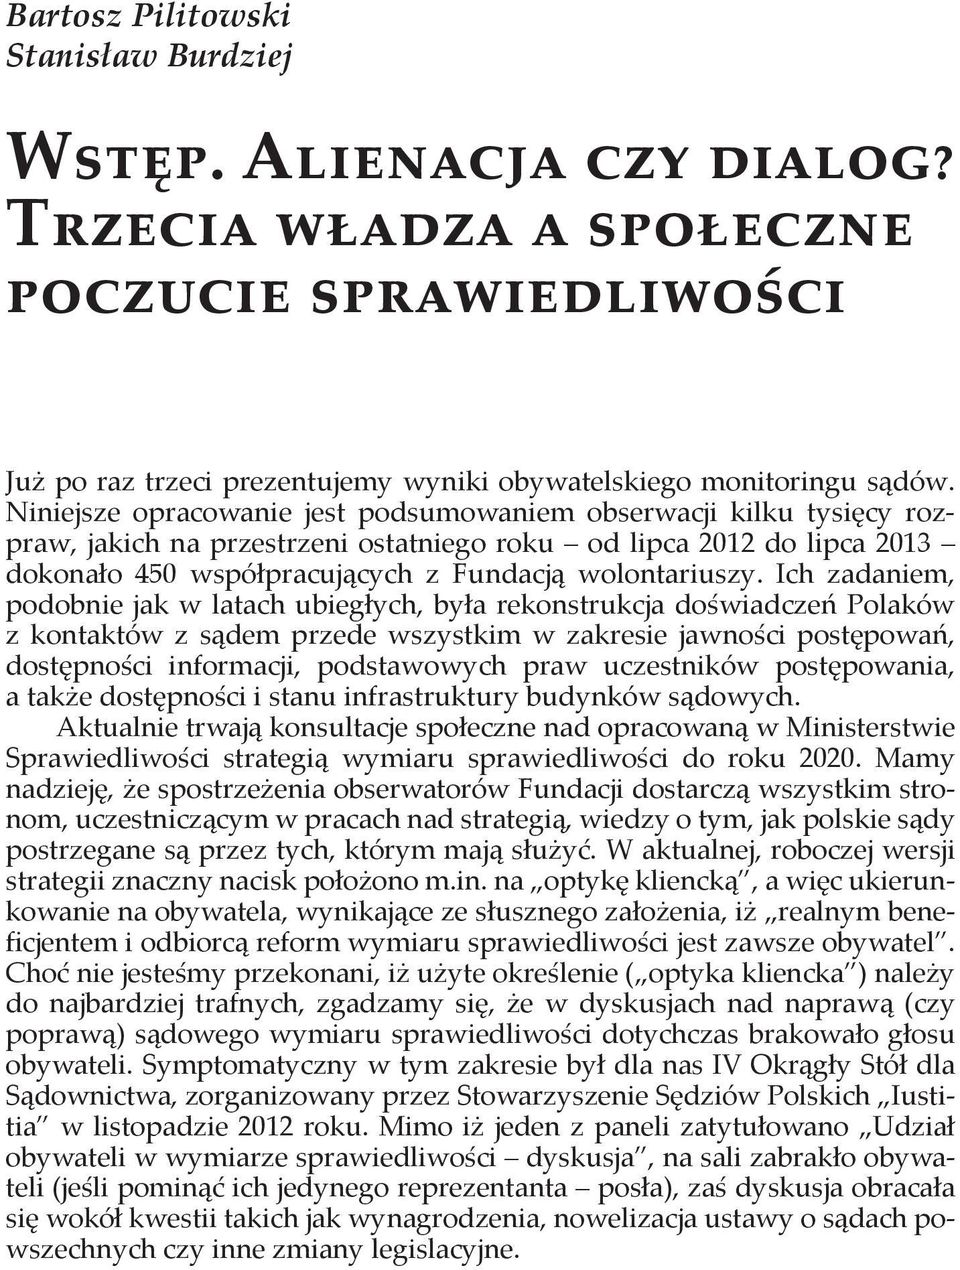 Ich zadaniem, podobnie jak w latach ubiegłych, była rekonstrukcja doświadczeń Polaków z kontaktów z sądem przede wszystkim w zakresie jawności postępowań, dostępności informacji, podstawowych praw